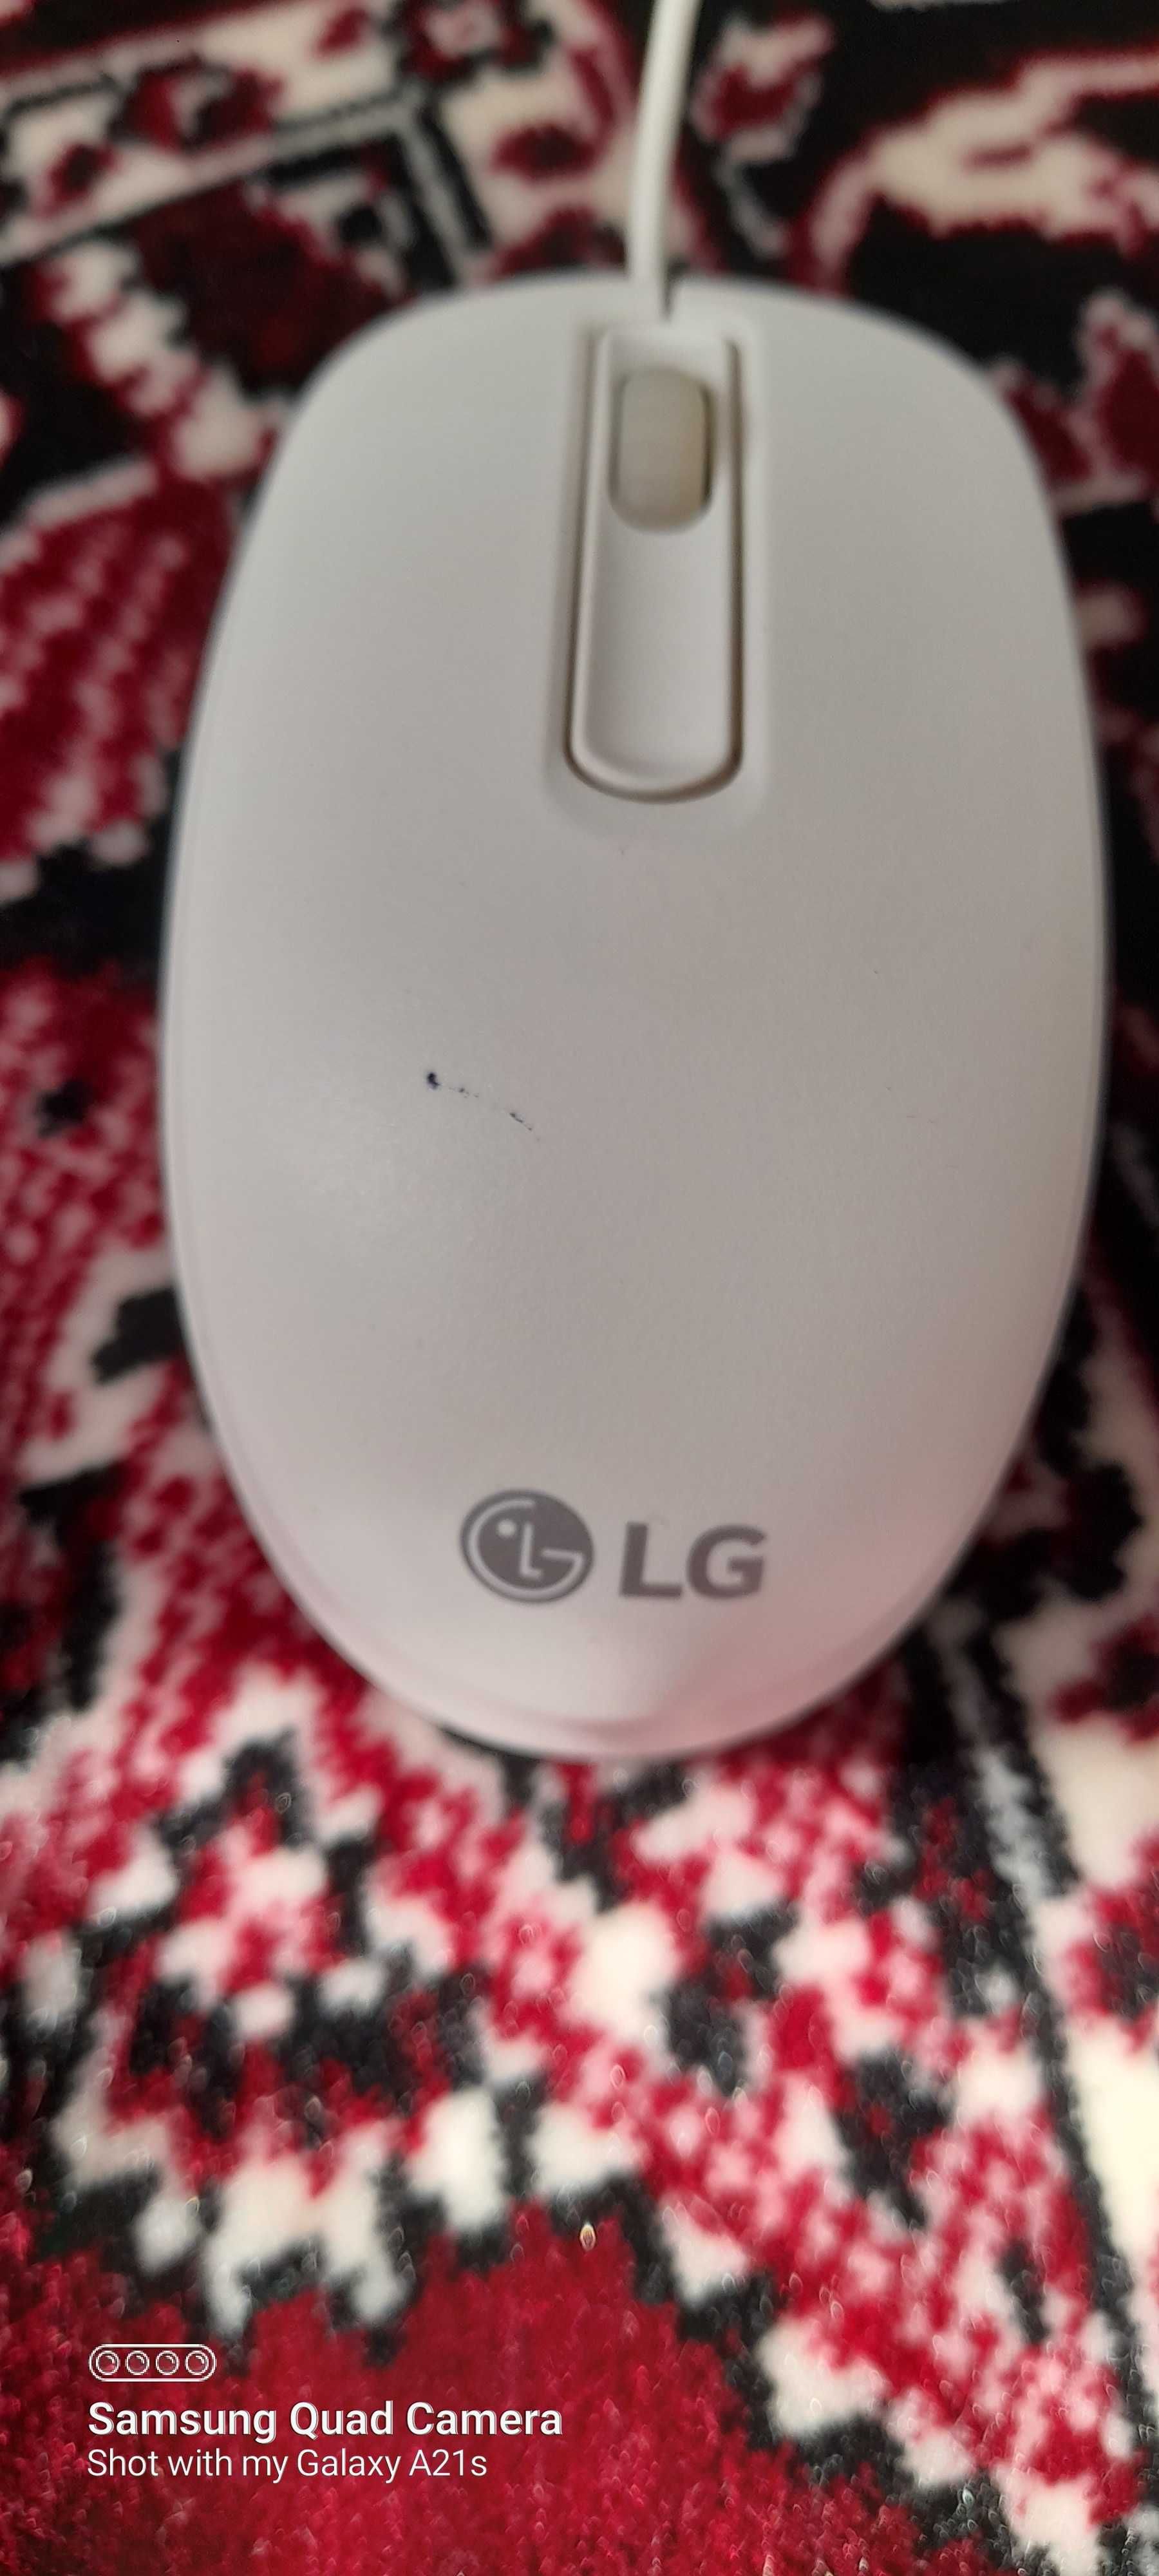 Оптическая мышь Lg оригинал , оптик "сичкон" LG